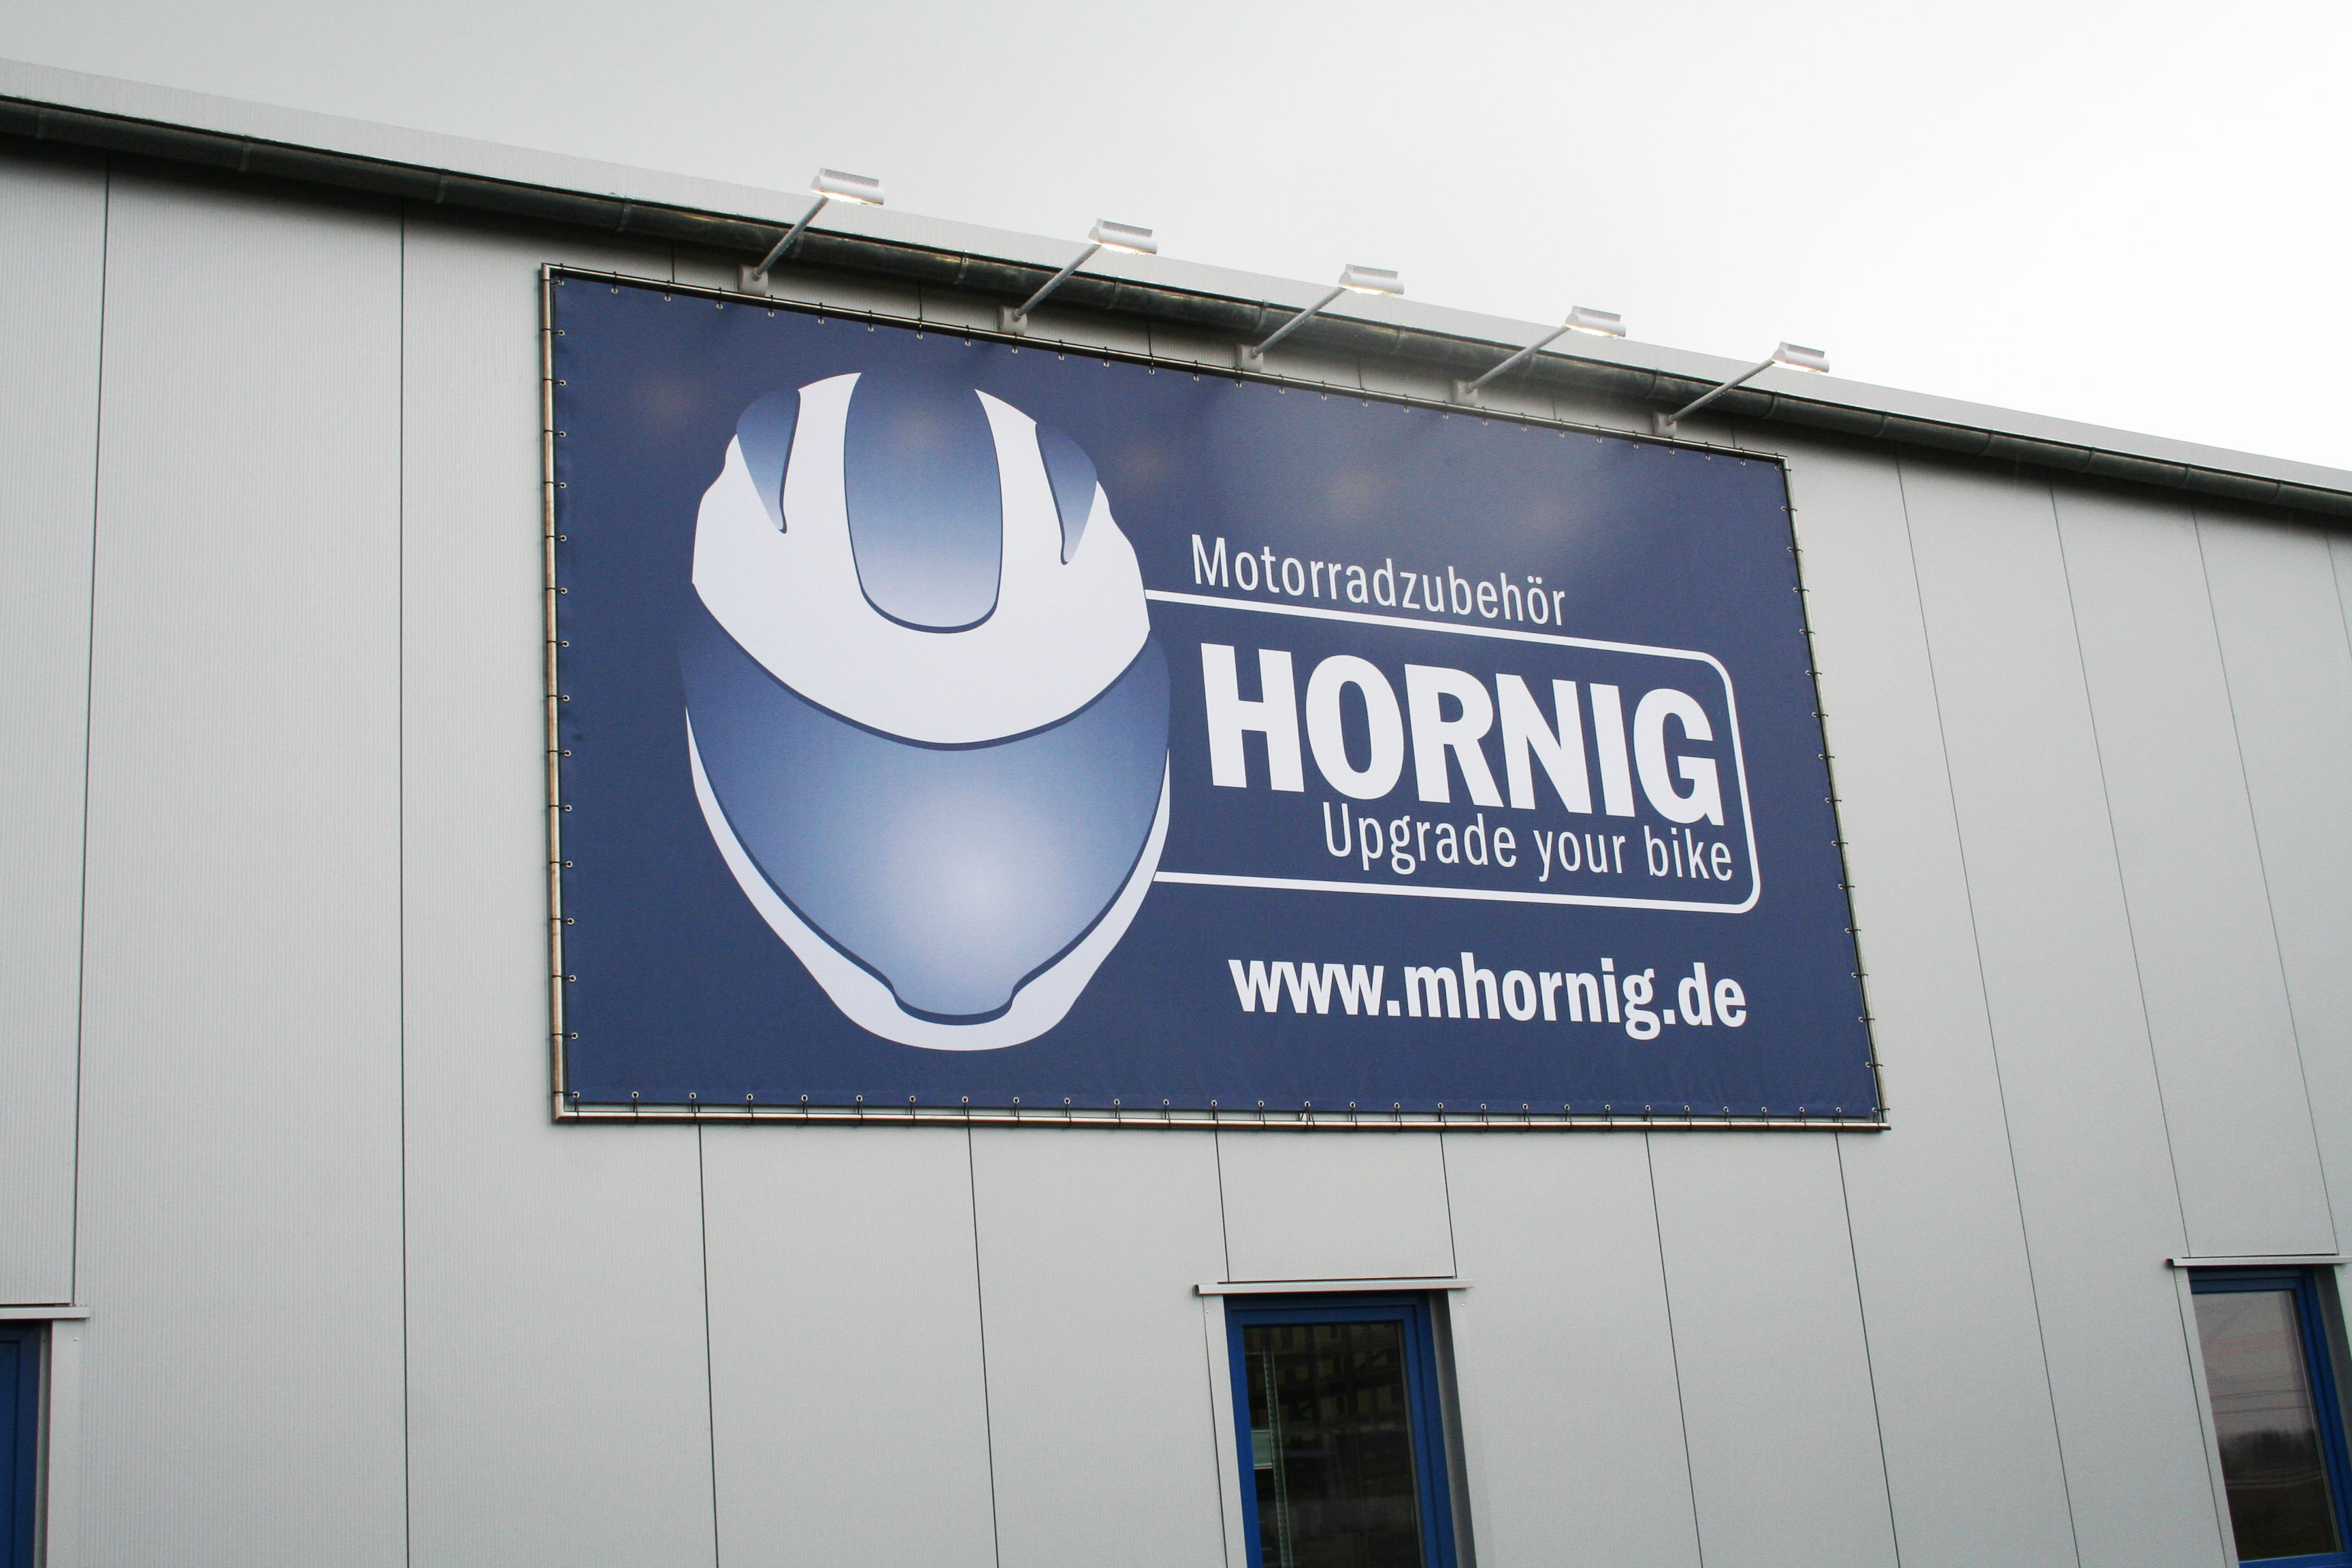 Motorradzubehör Hornig GmbH ist umgezogen Ihr BMW Motorradzubehör finden  Sie ab jetzt in Cham, Motorradzubehör Hornig